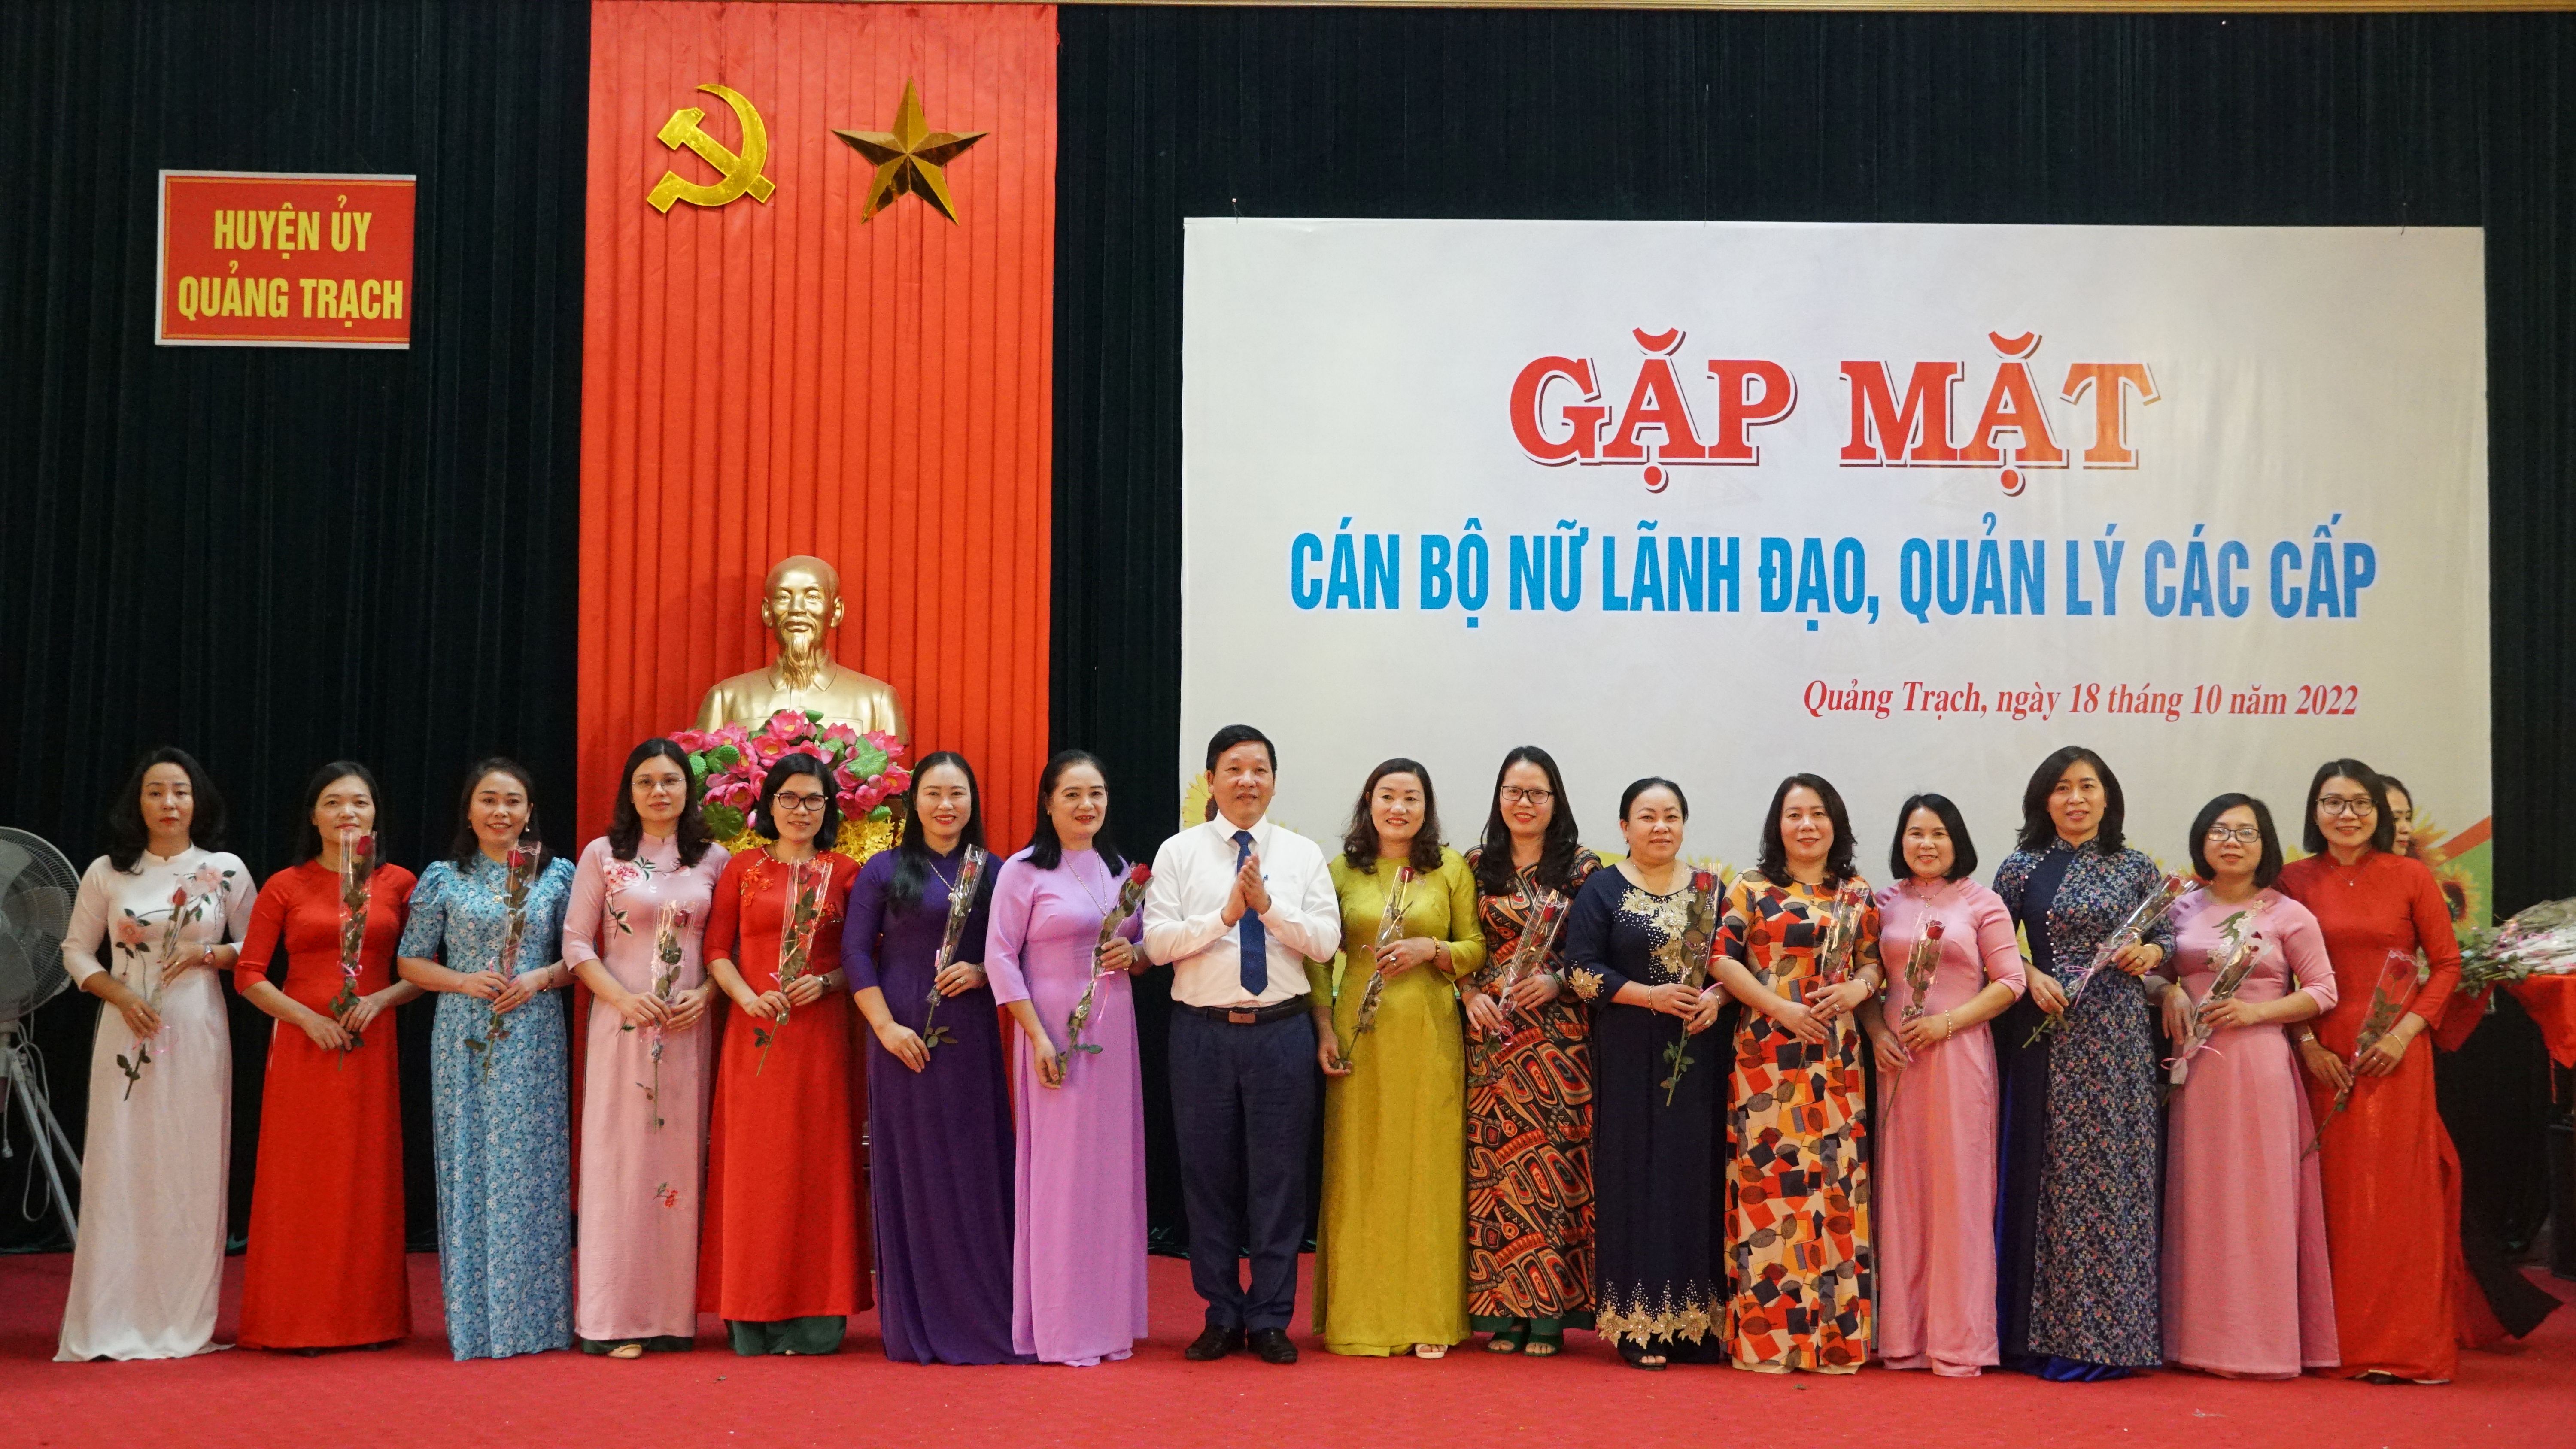 Đồng chí Chủ tịch UBND huyện Quảng Trạch Phan Văn Thanh tặng hoa chúc mừng đội ngũ cán bộ lãnh đạo, quản lý thuộc diện Ban Thường vụ Huyện ủy quản lý.